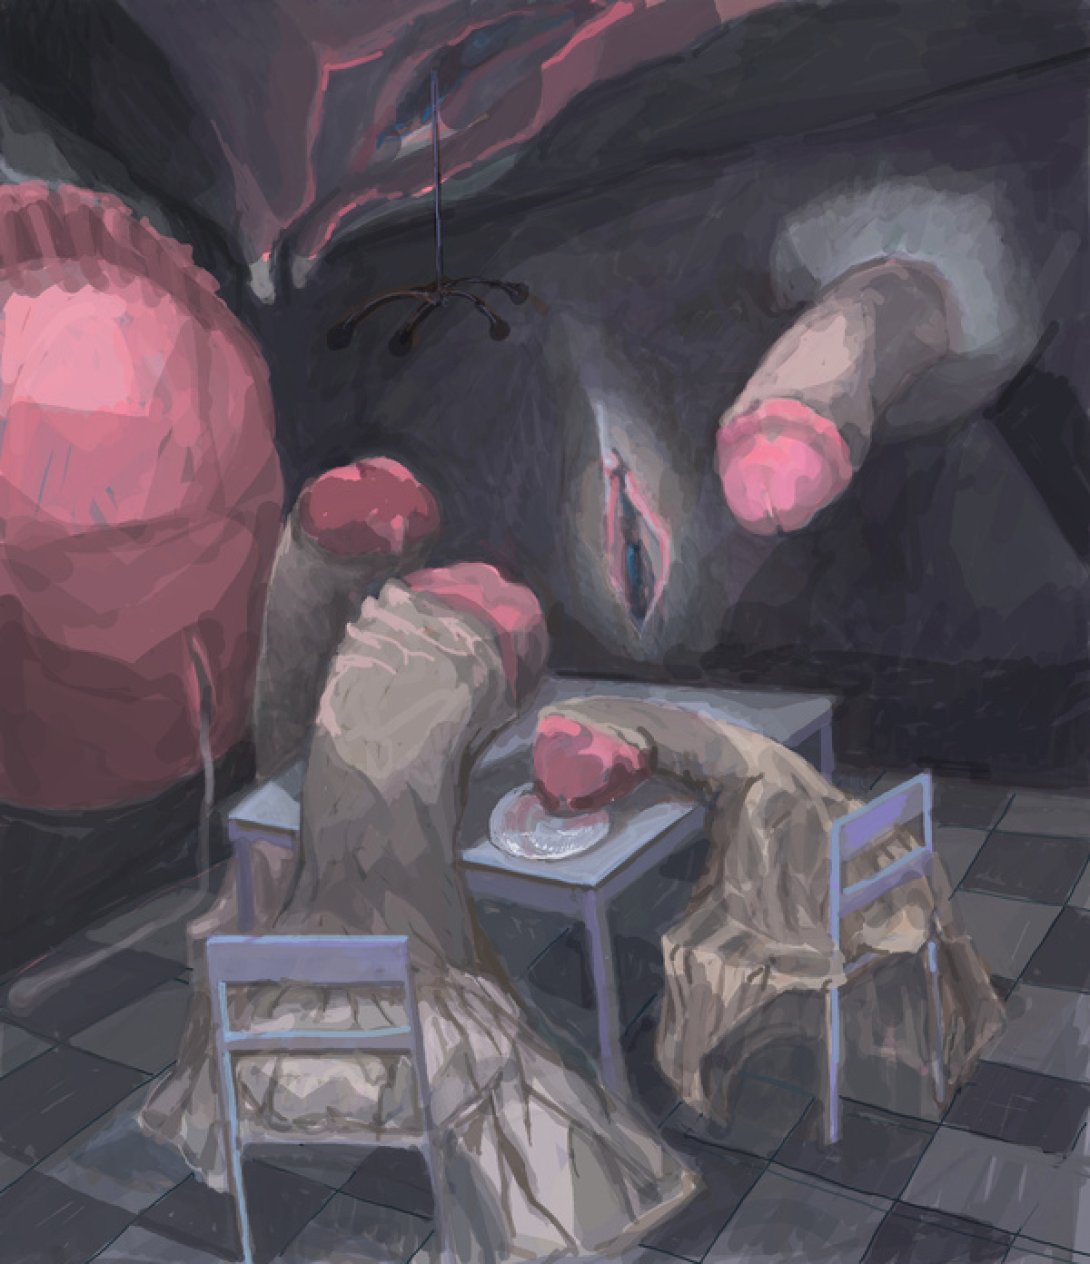 Obra de Walfrido Hau: "Hogar indecente" representa un grupo de genitales en una casa sentados a la mesa.